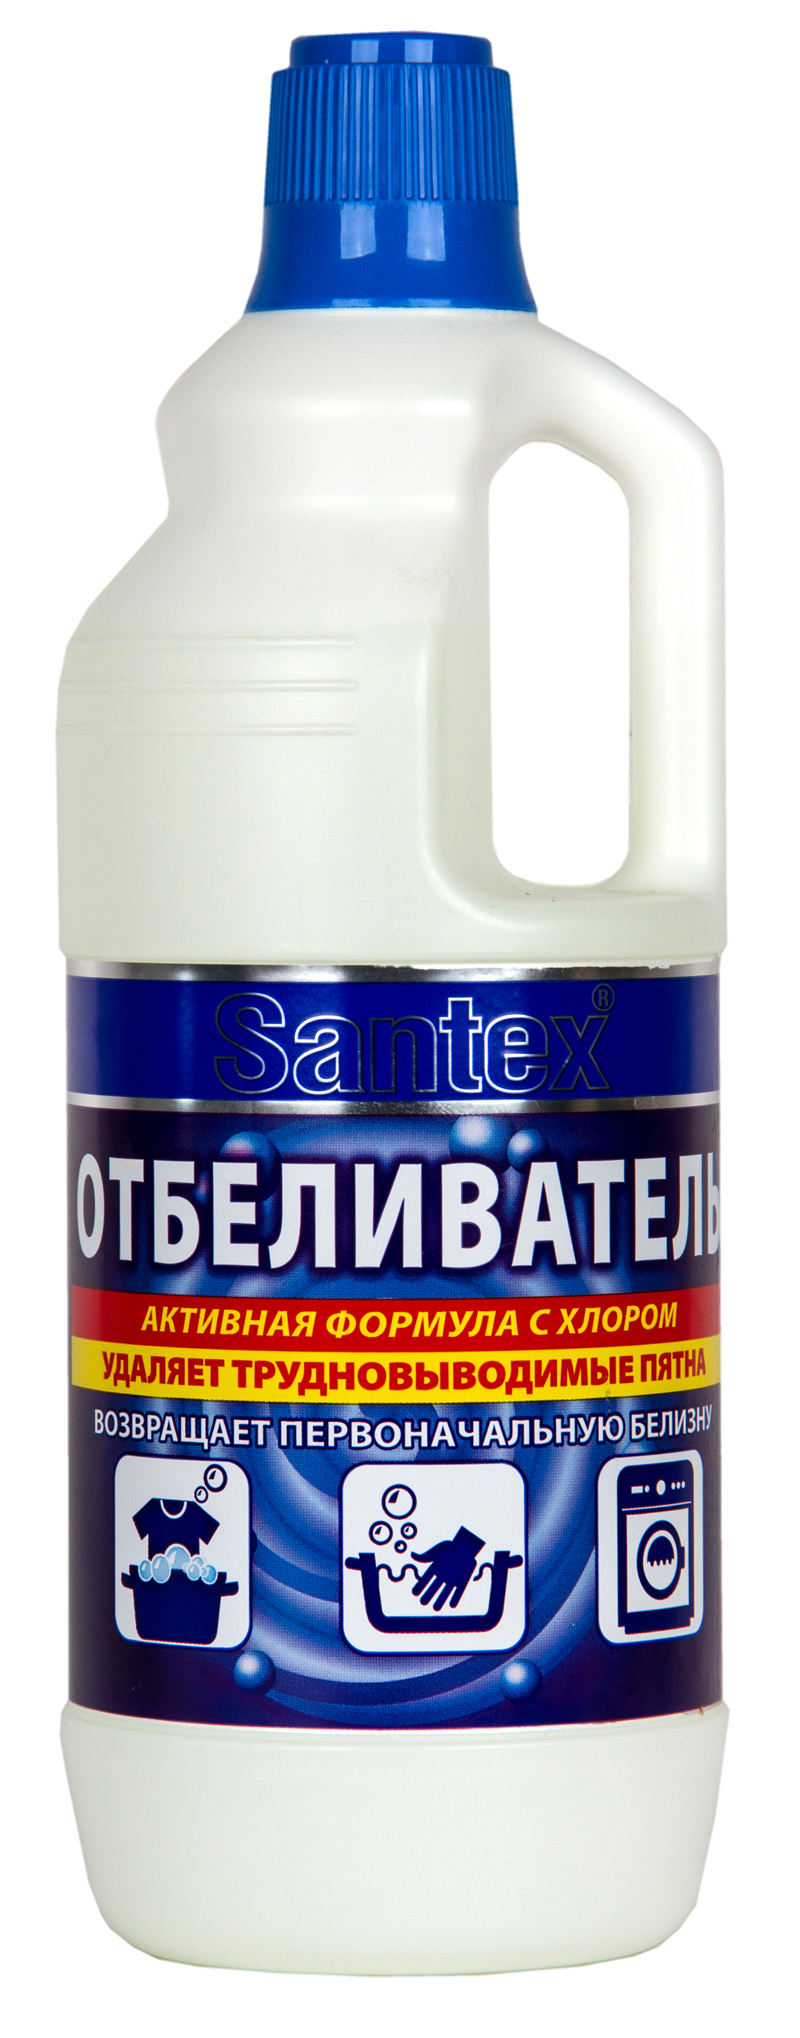 Отбеливатель Santex с хлором 1000 гр